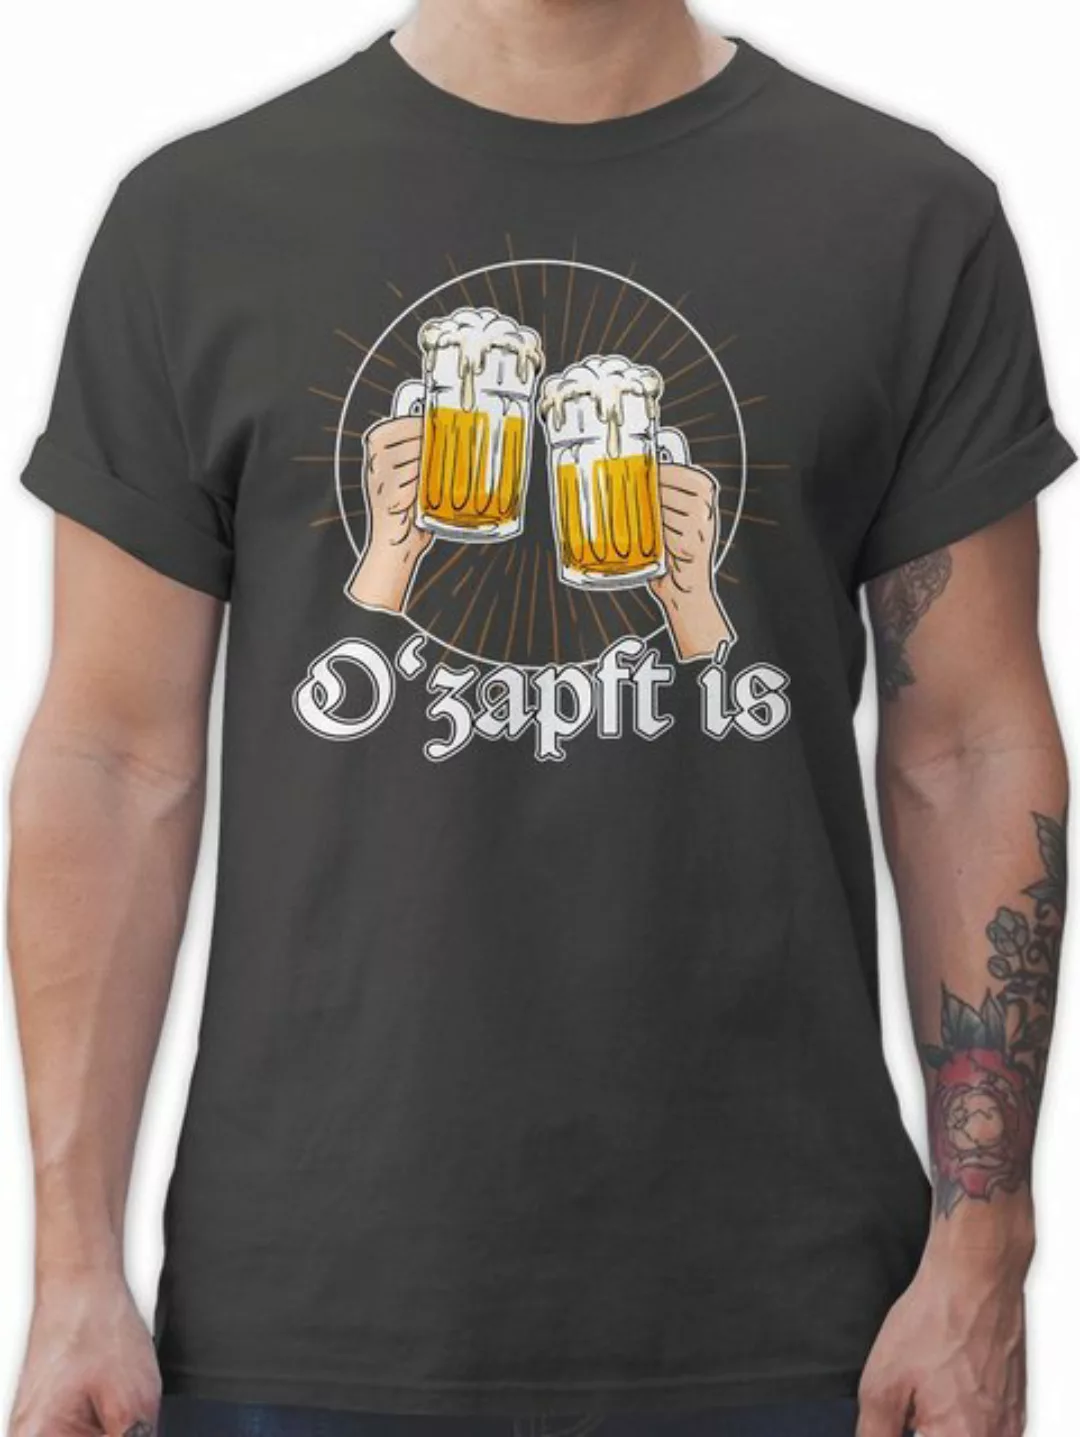 Shirtracer T-Shirt O Zapft is Bier O'zapft is Anstich Es ist angezapft Mode günstig online kaufen